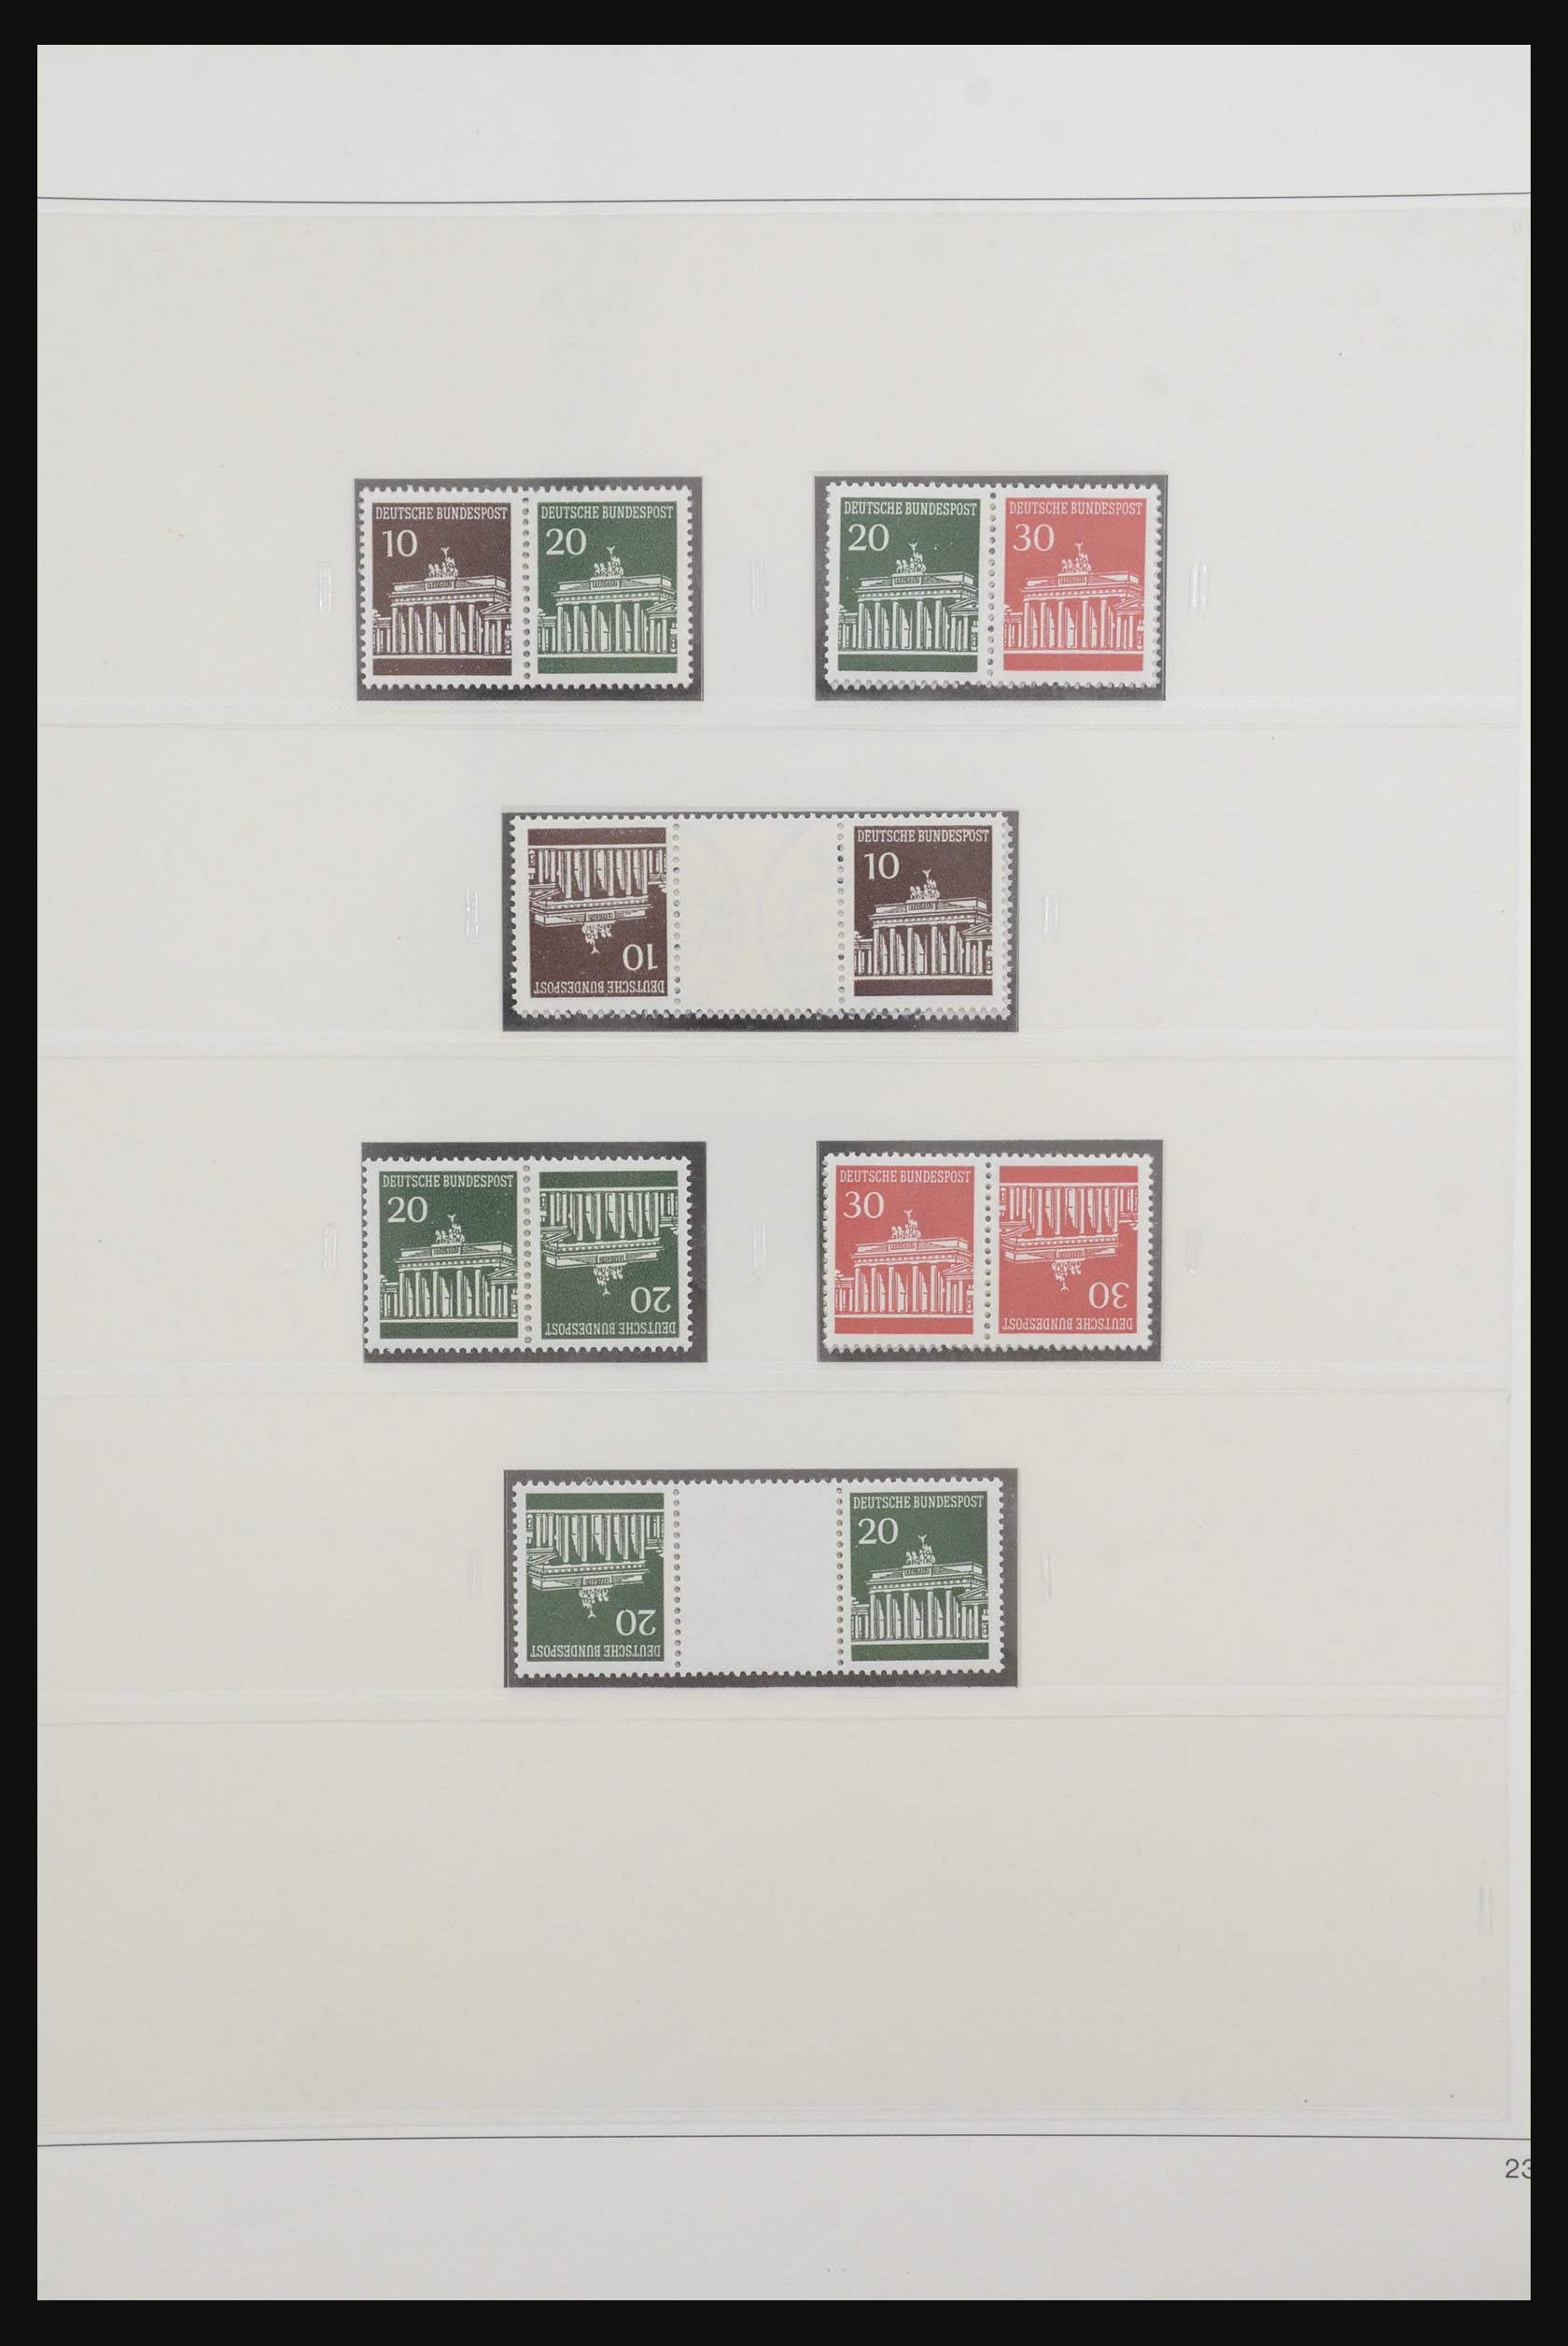 31842 031 - 31842 Bundespost combinations 1951-2003.